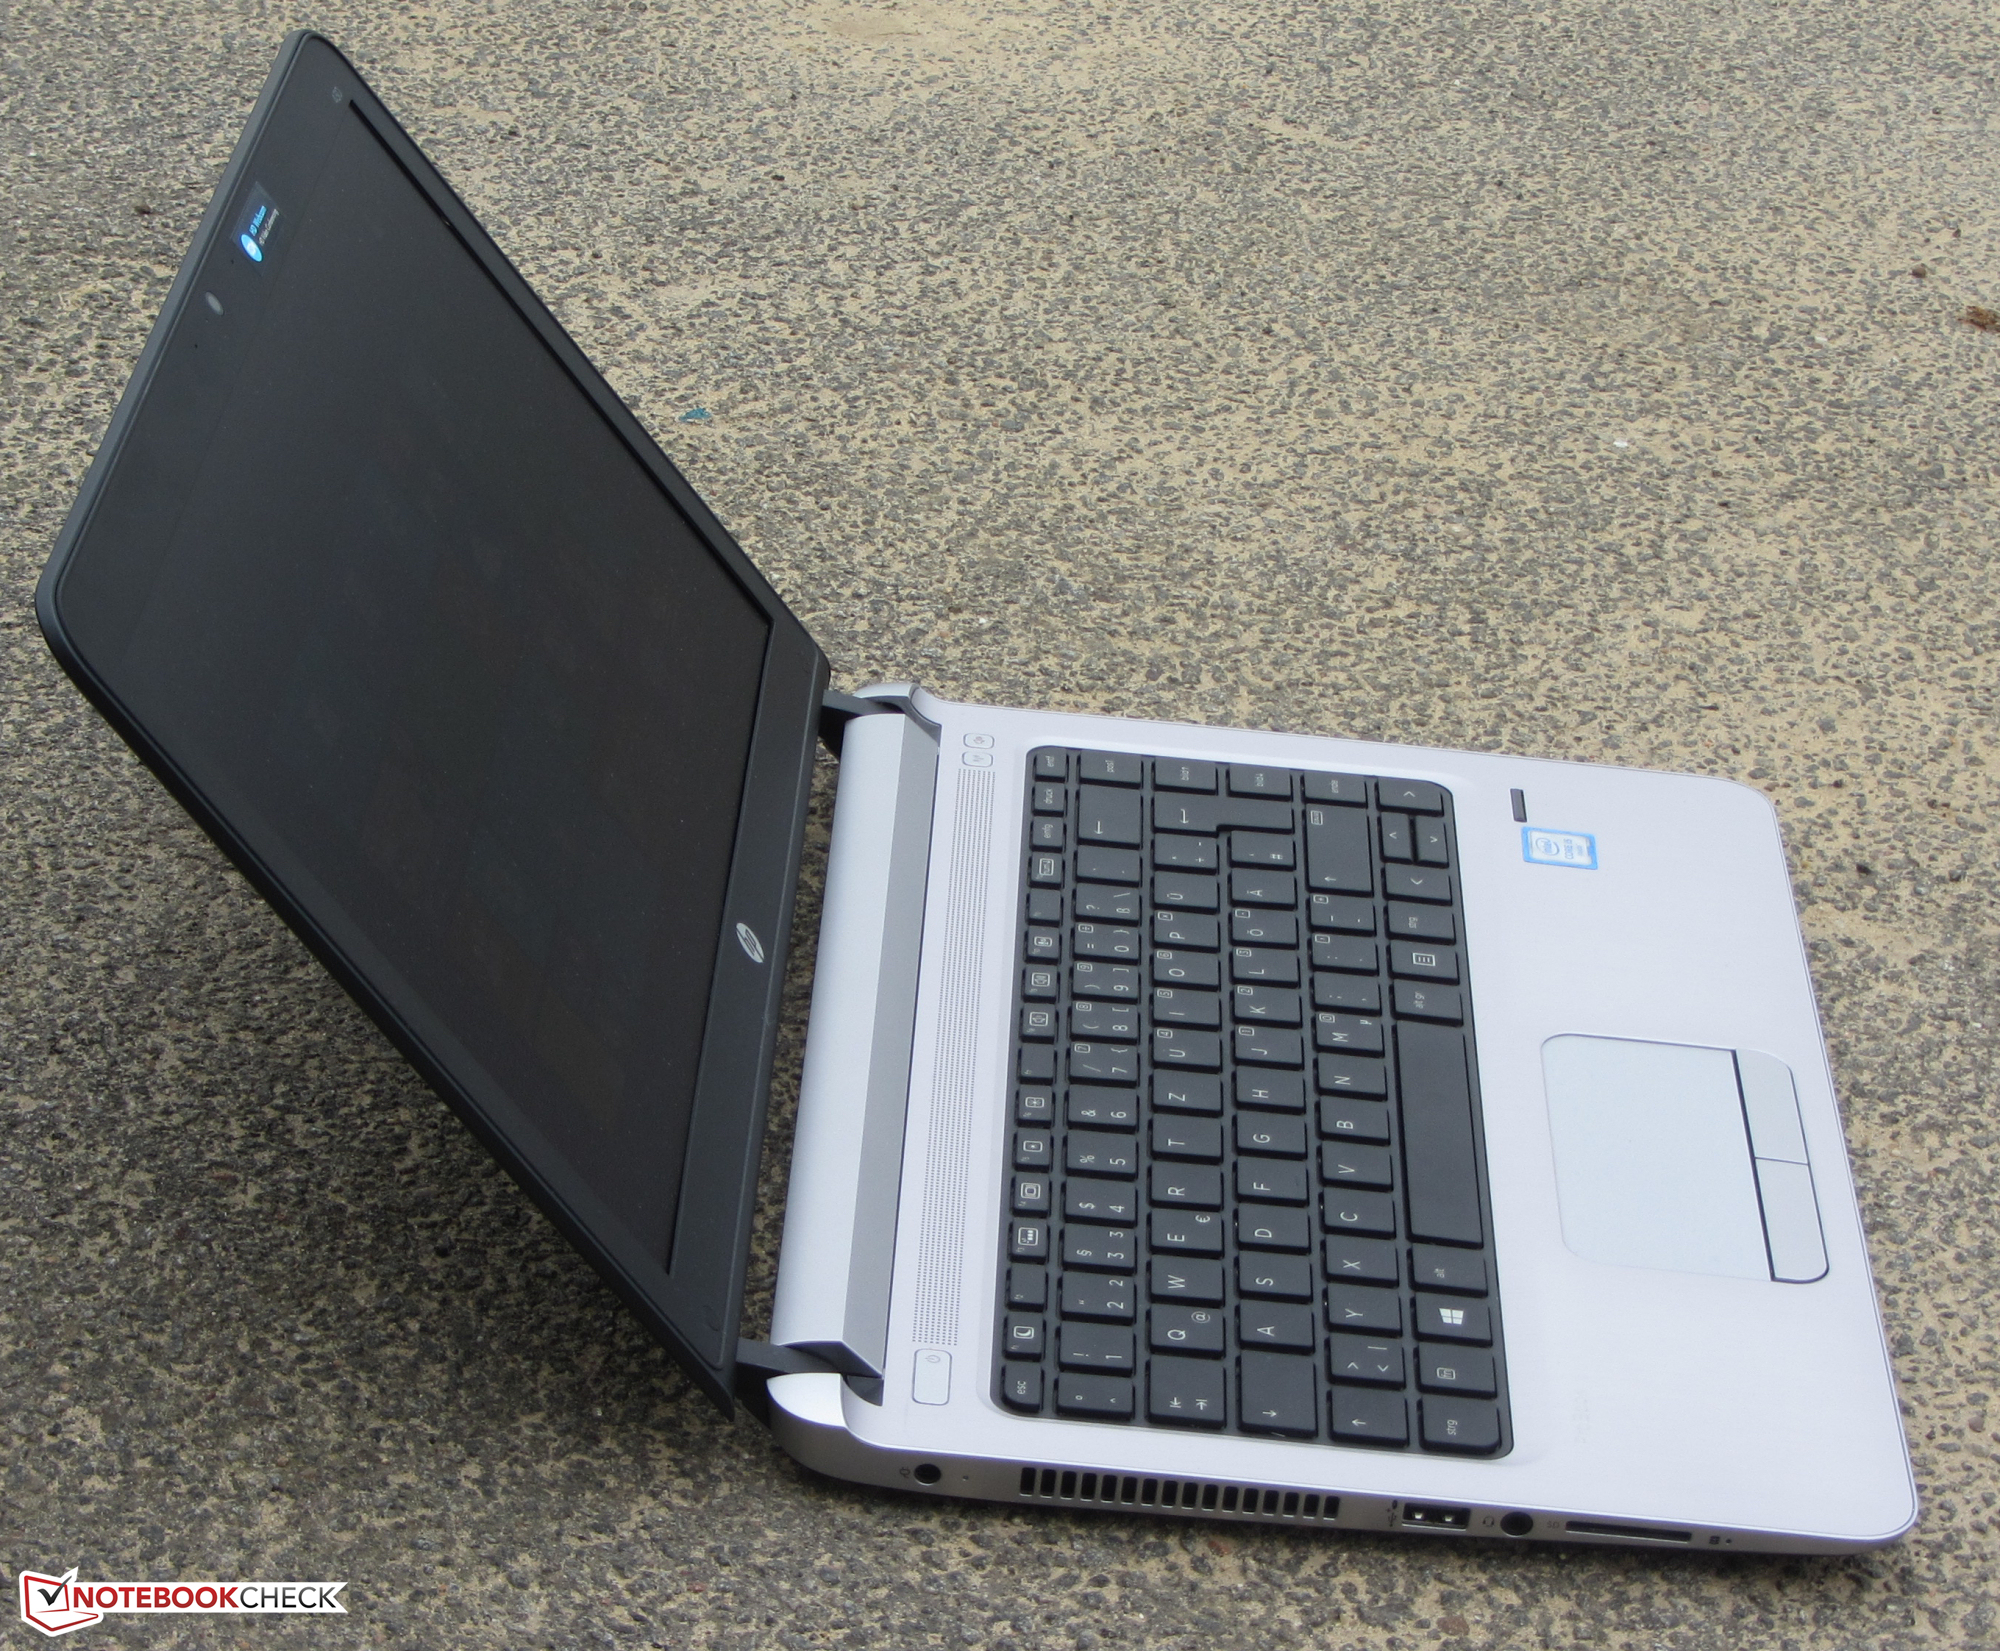 HP ProBook 430 G3 Notebook Review - NotebookCheck.net Reviews